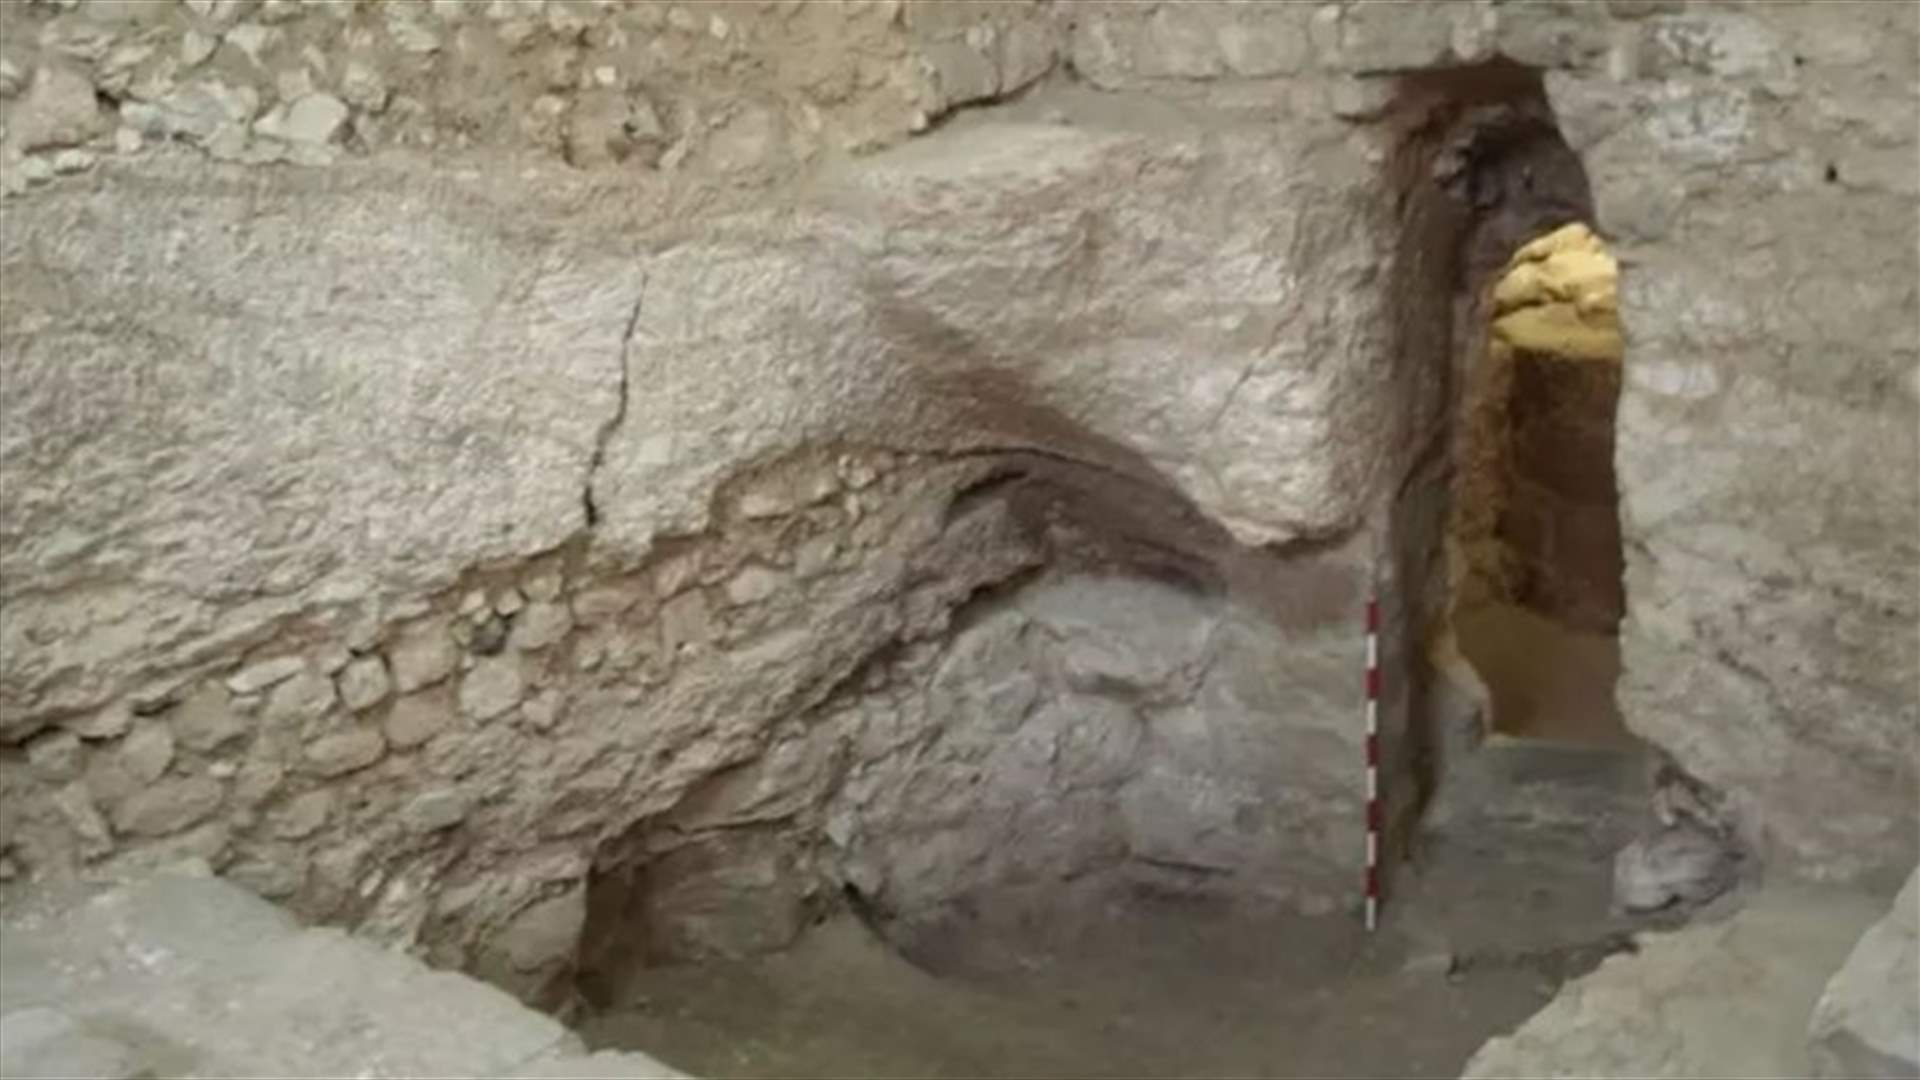 اكتشاف بيت من القرن الأول في الناصرة... يُرجح عالم بريطاني أن يكون منزل المسيح (صور)